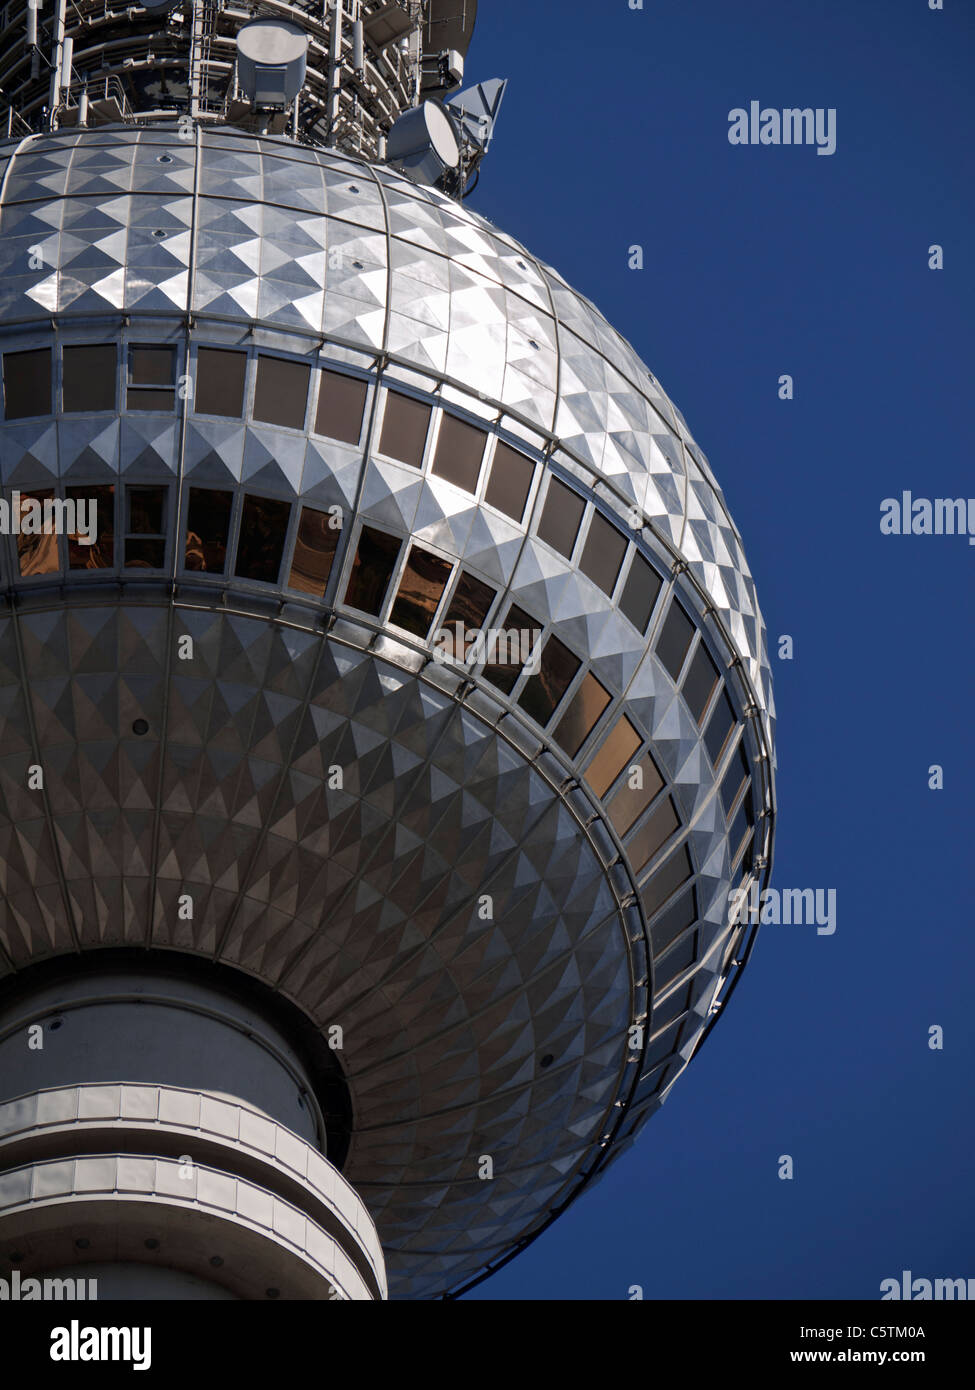 Vue de la tour de télévision ou Telecafè à Mitte Berlin Allemagne Banque D'Images